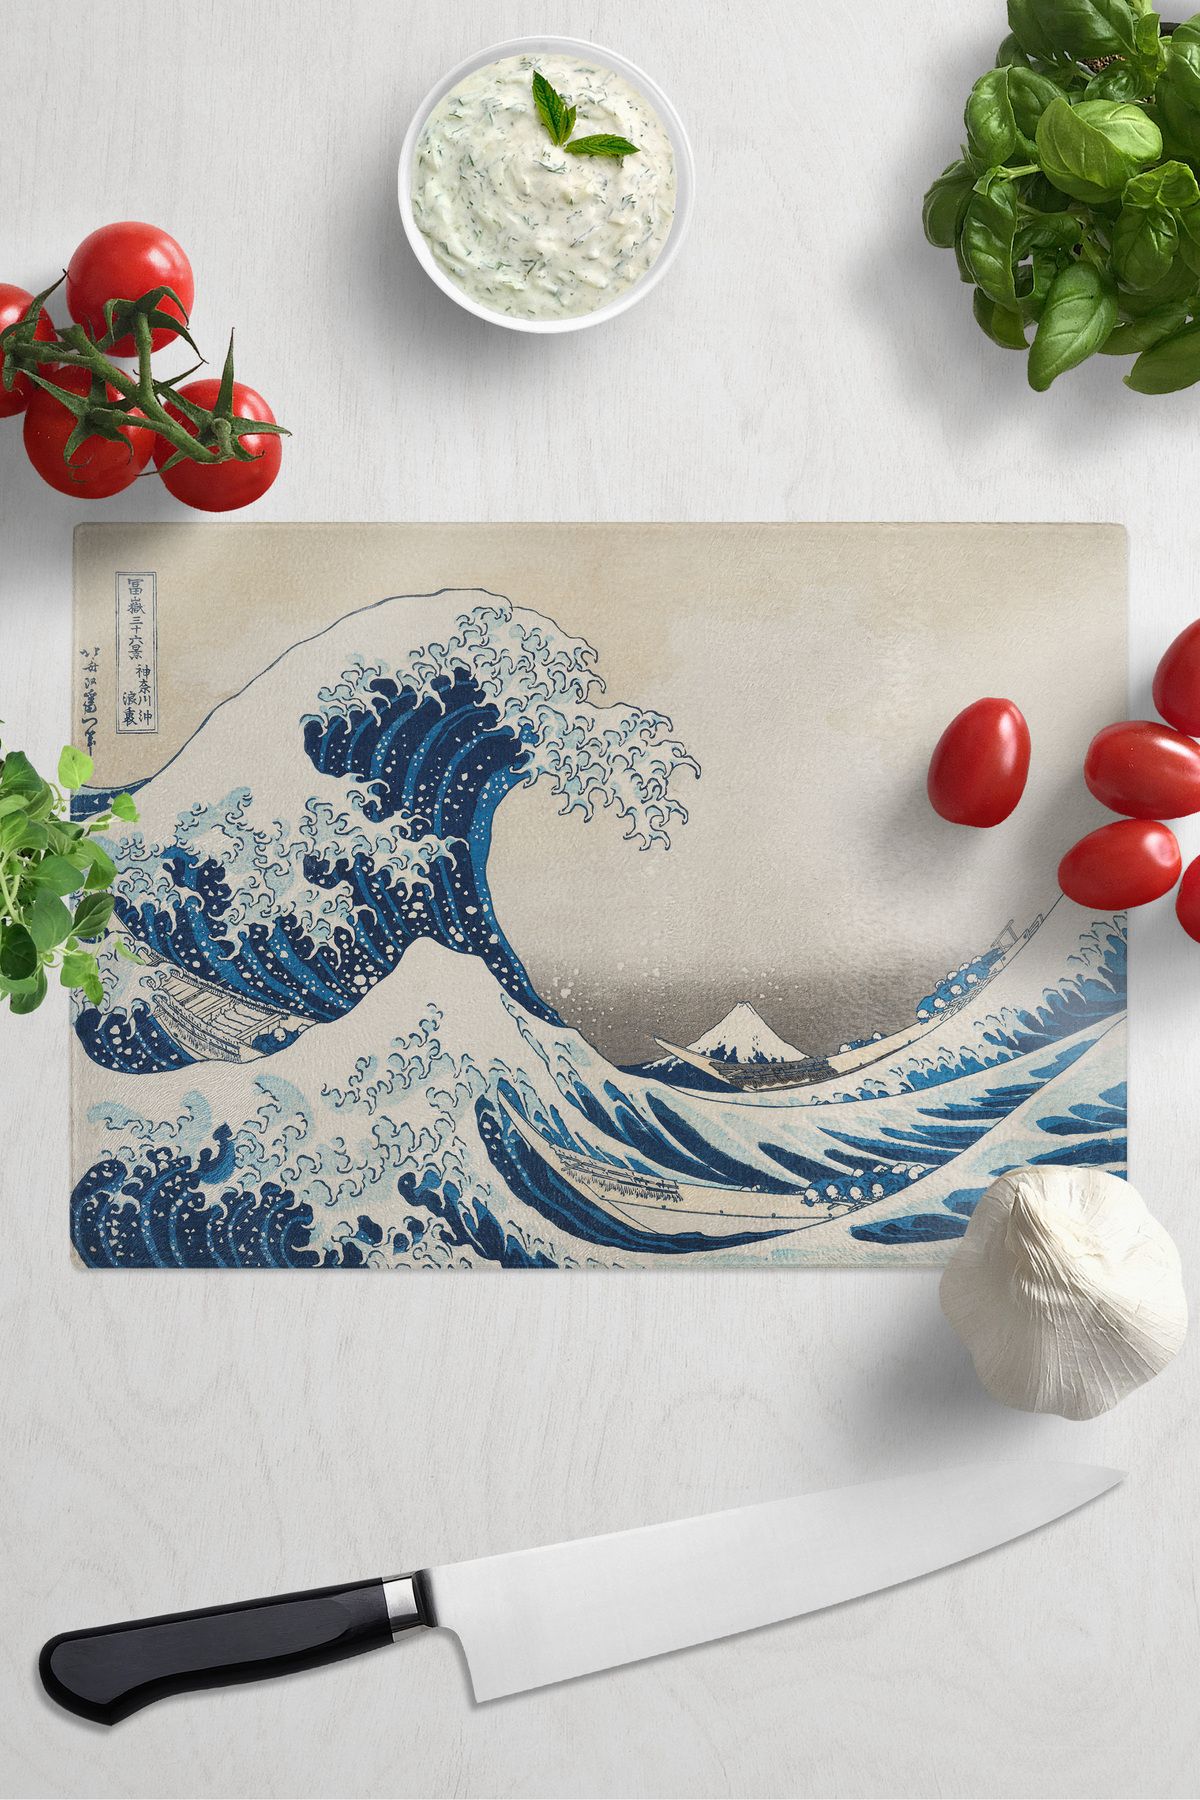 postifull Kesme Tahtası, Kalın Ve Kırılmaz Cama Baskı - Hokusai Sanat Eseri Baskılı - 21*30cm, Doğrama Tahtası